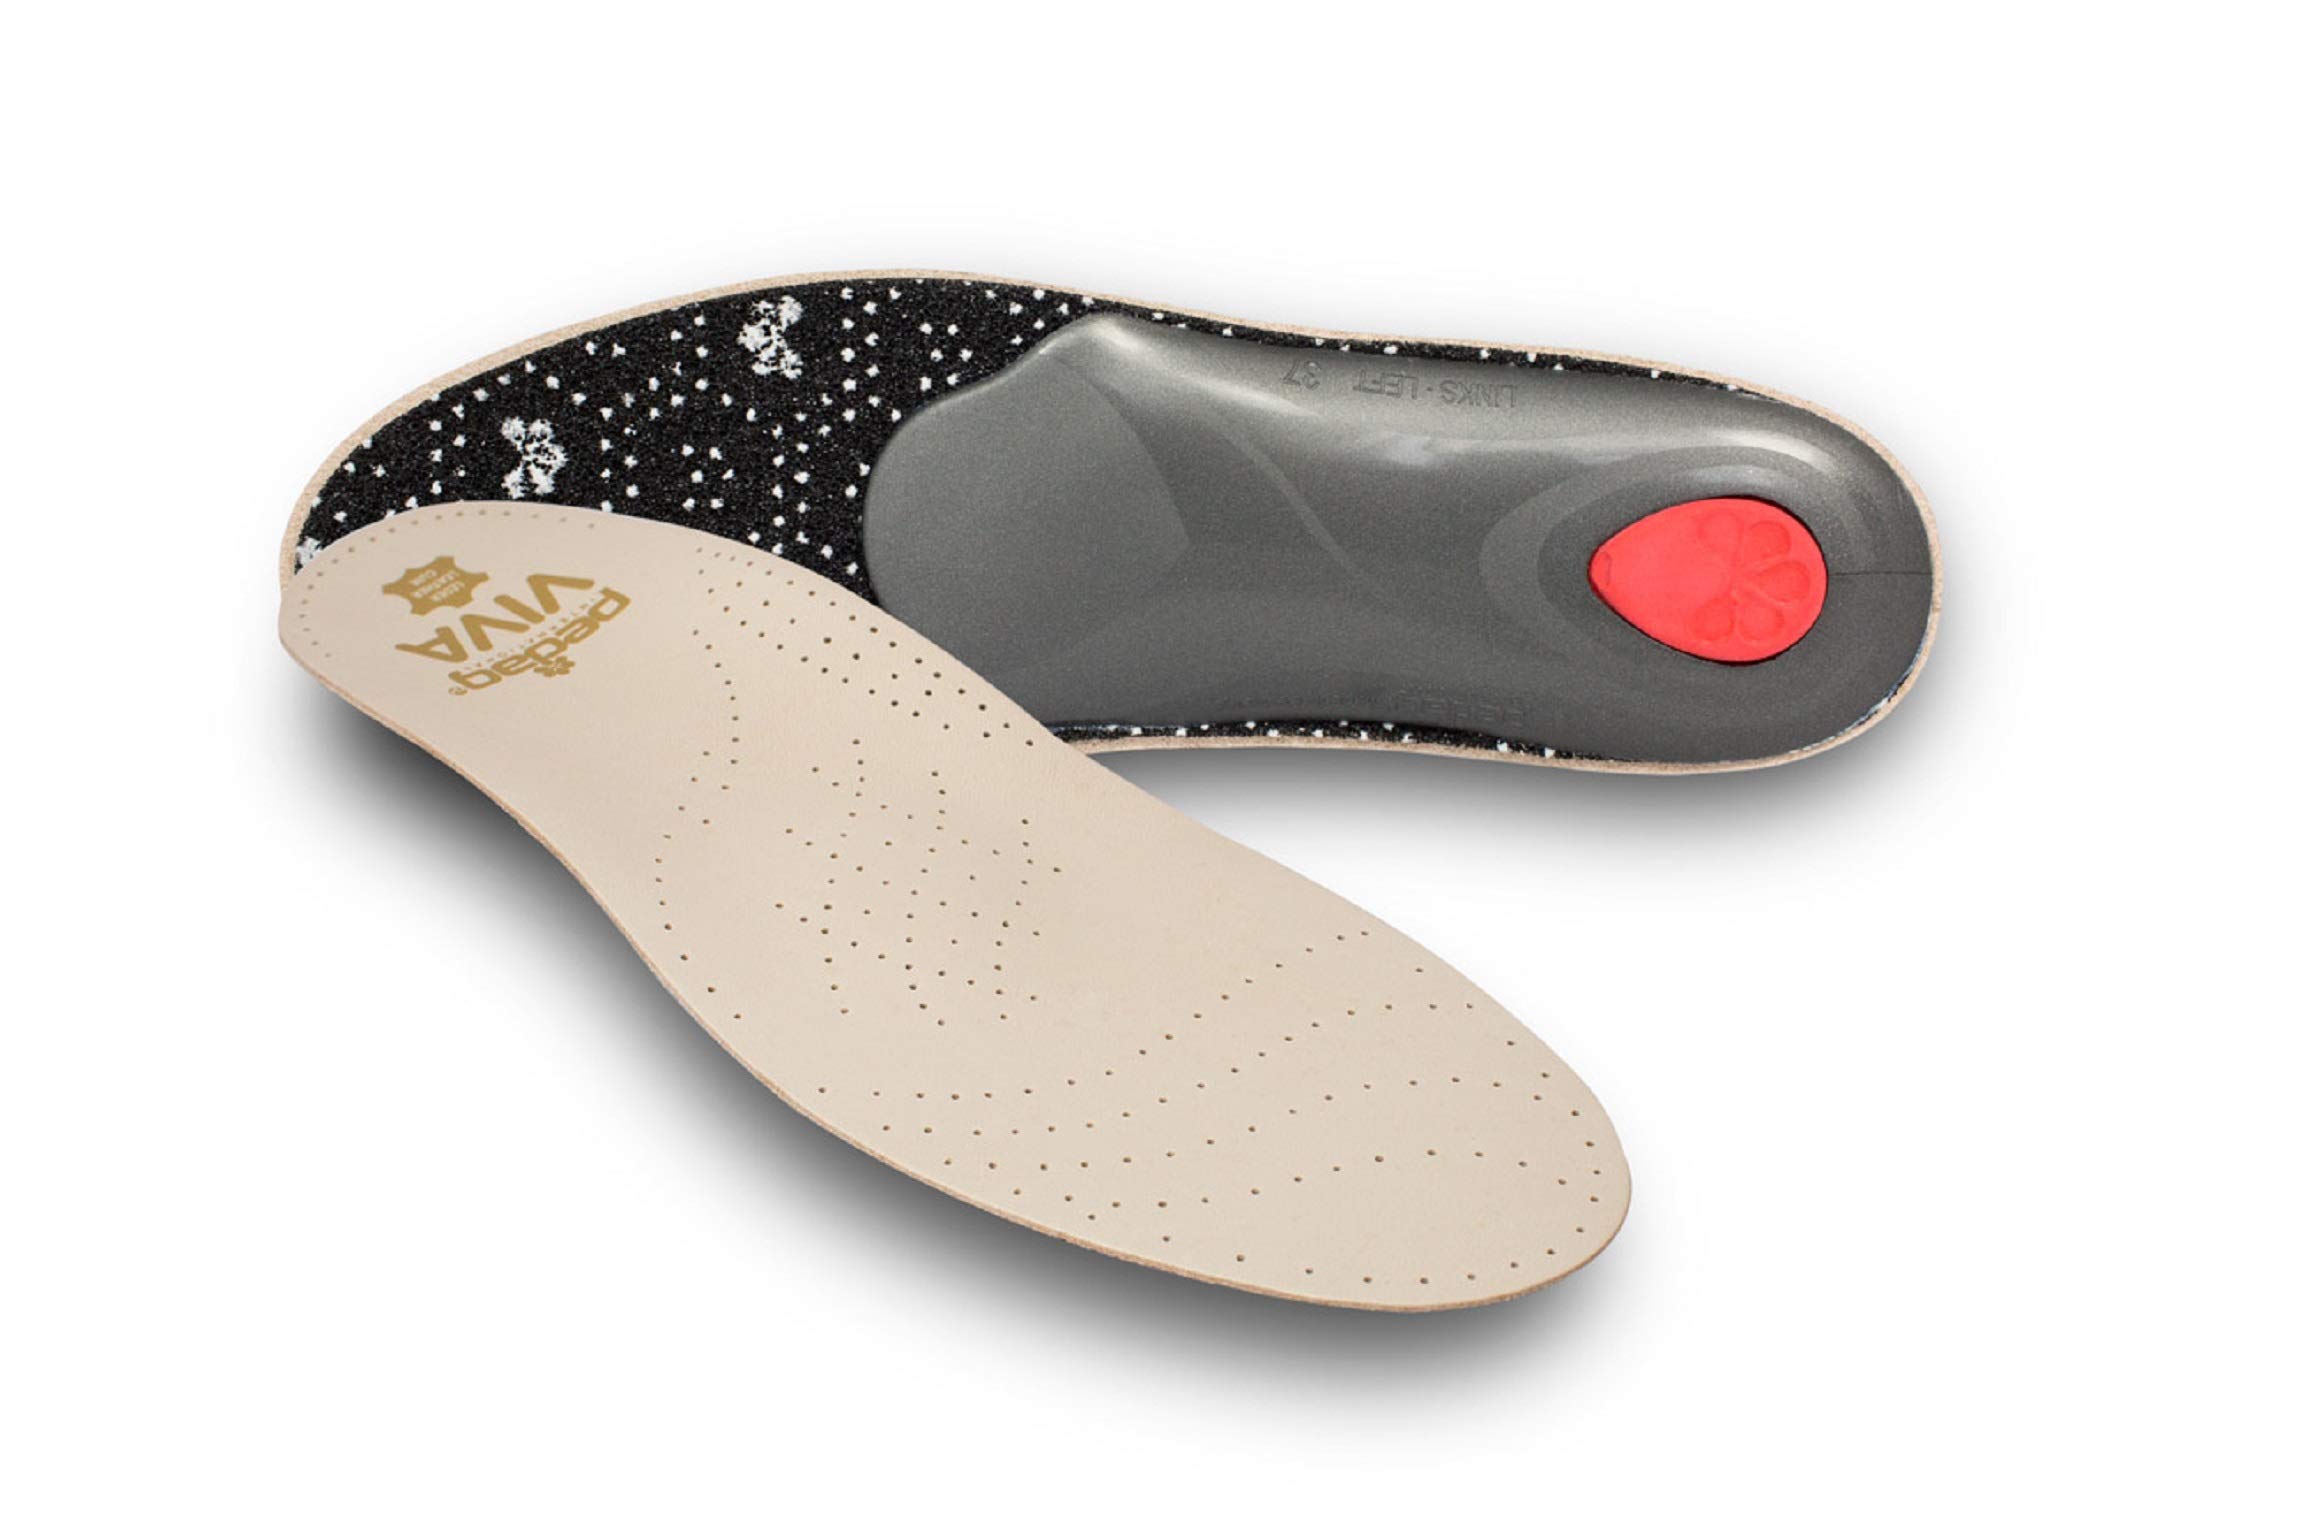 pedag Viva Leder Einlegesohlen – für komfortables Gehen|extra dünnes & leichtes Fußbett | passt in alle flachen Schuhe | wirkt vorbeugend & lindert Fußschmerzen sowie Rückenbeschwerden